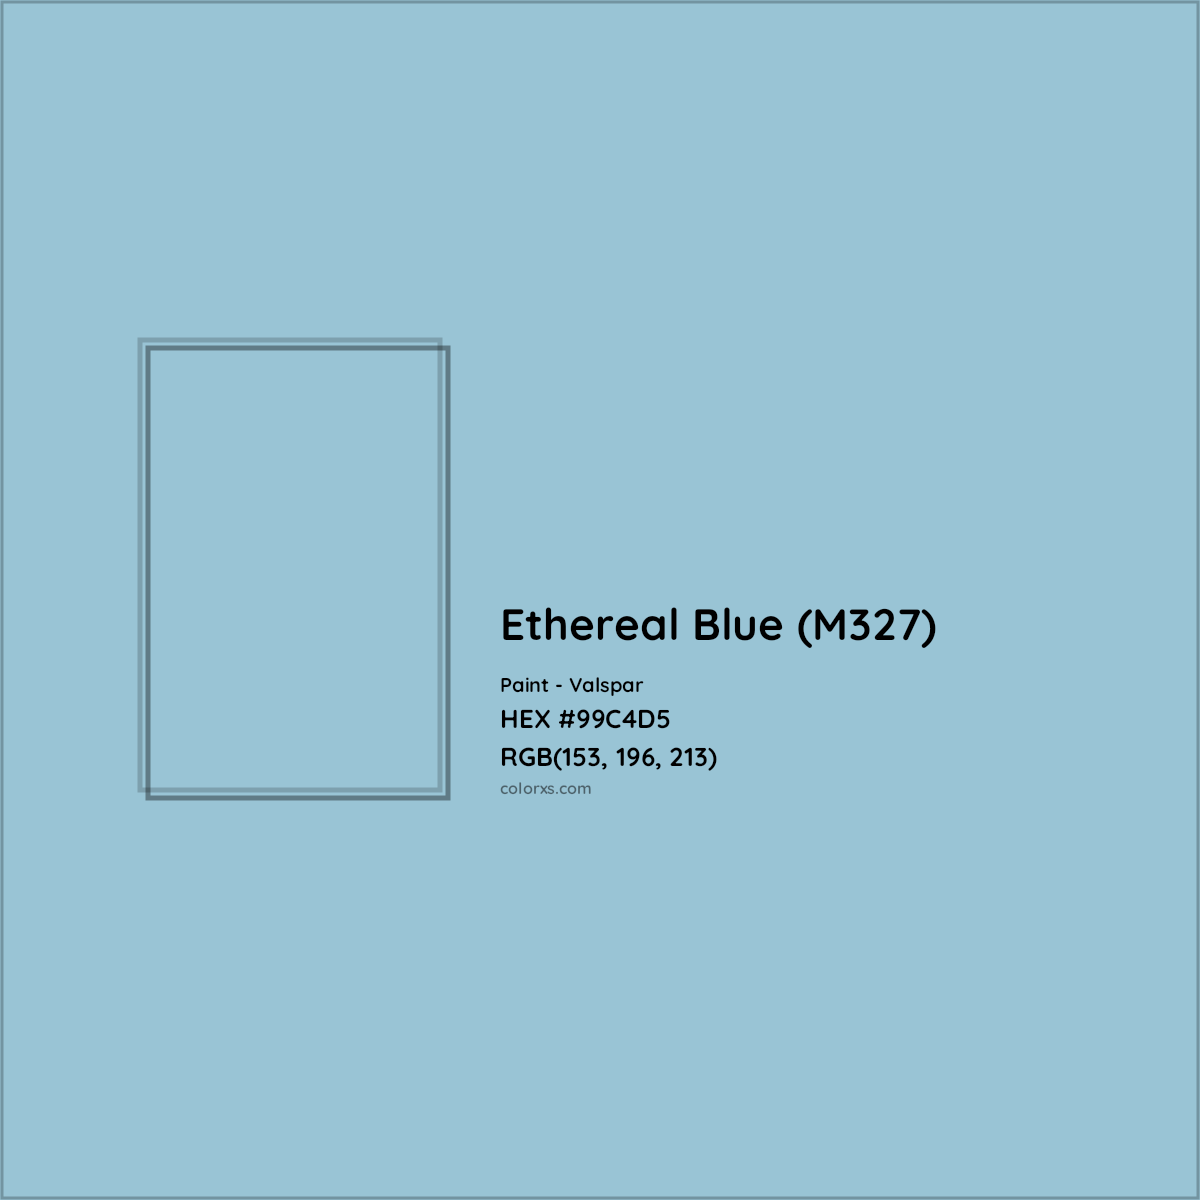 HEX #99C4D5 Ethereal Blue (M327) Paint Valspar - Color Code